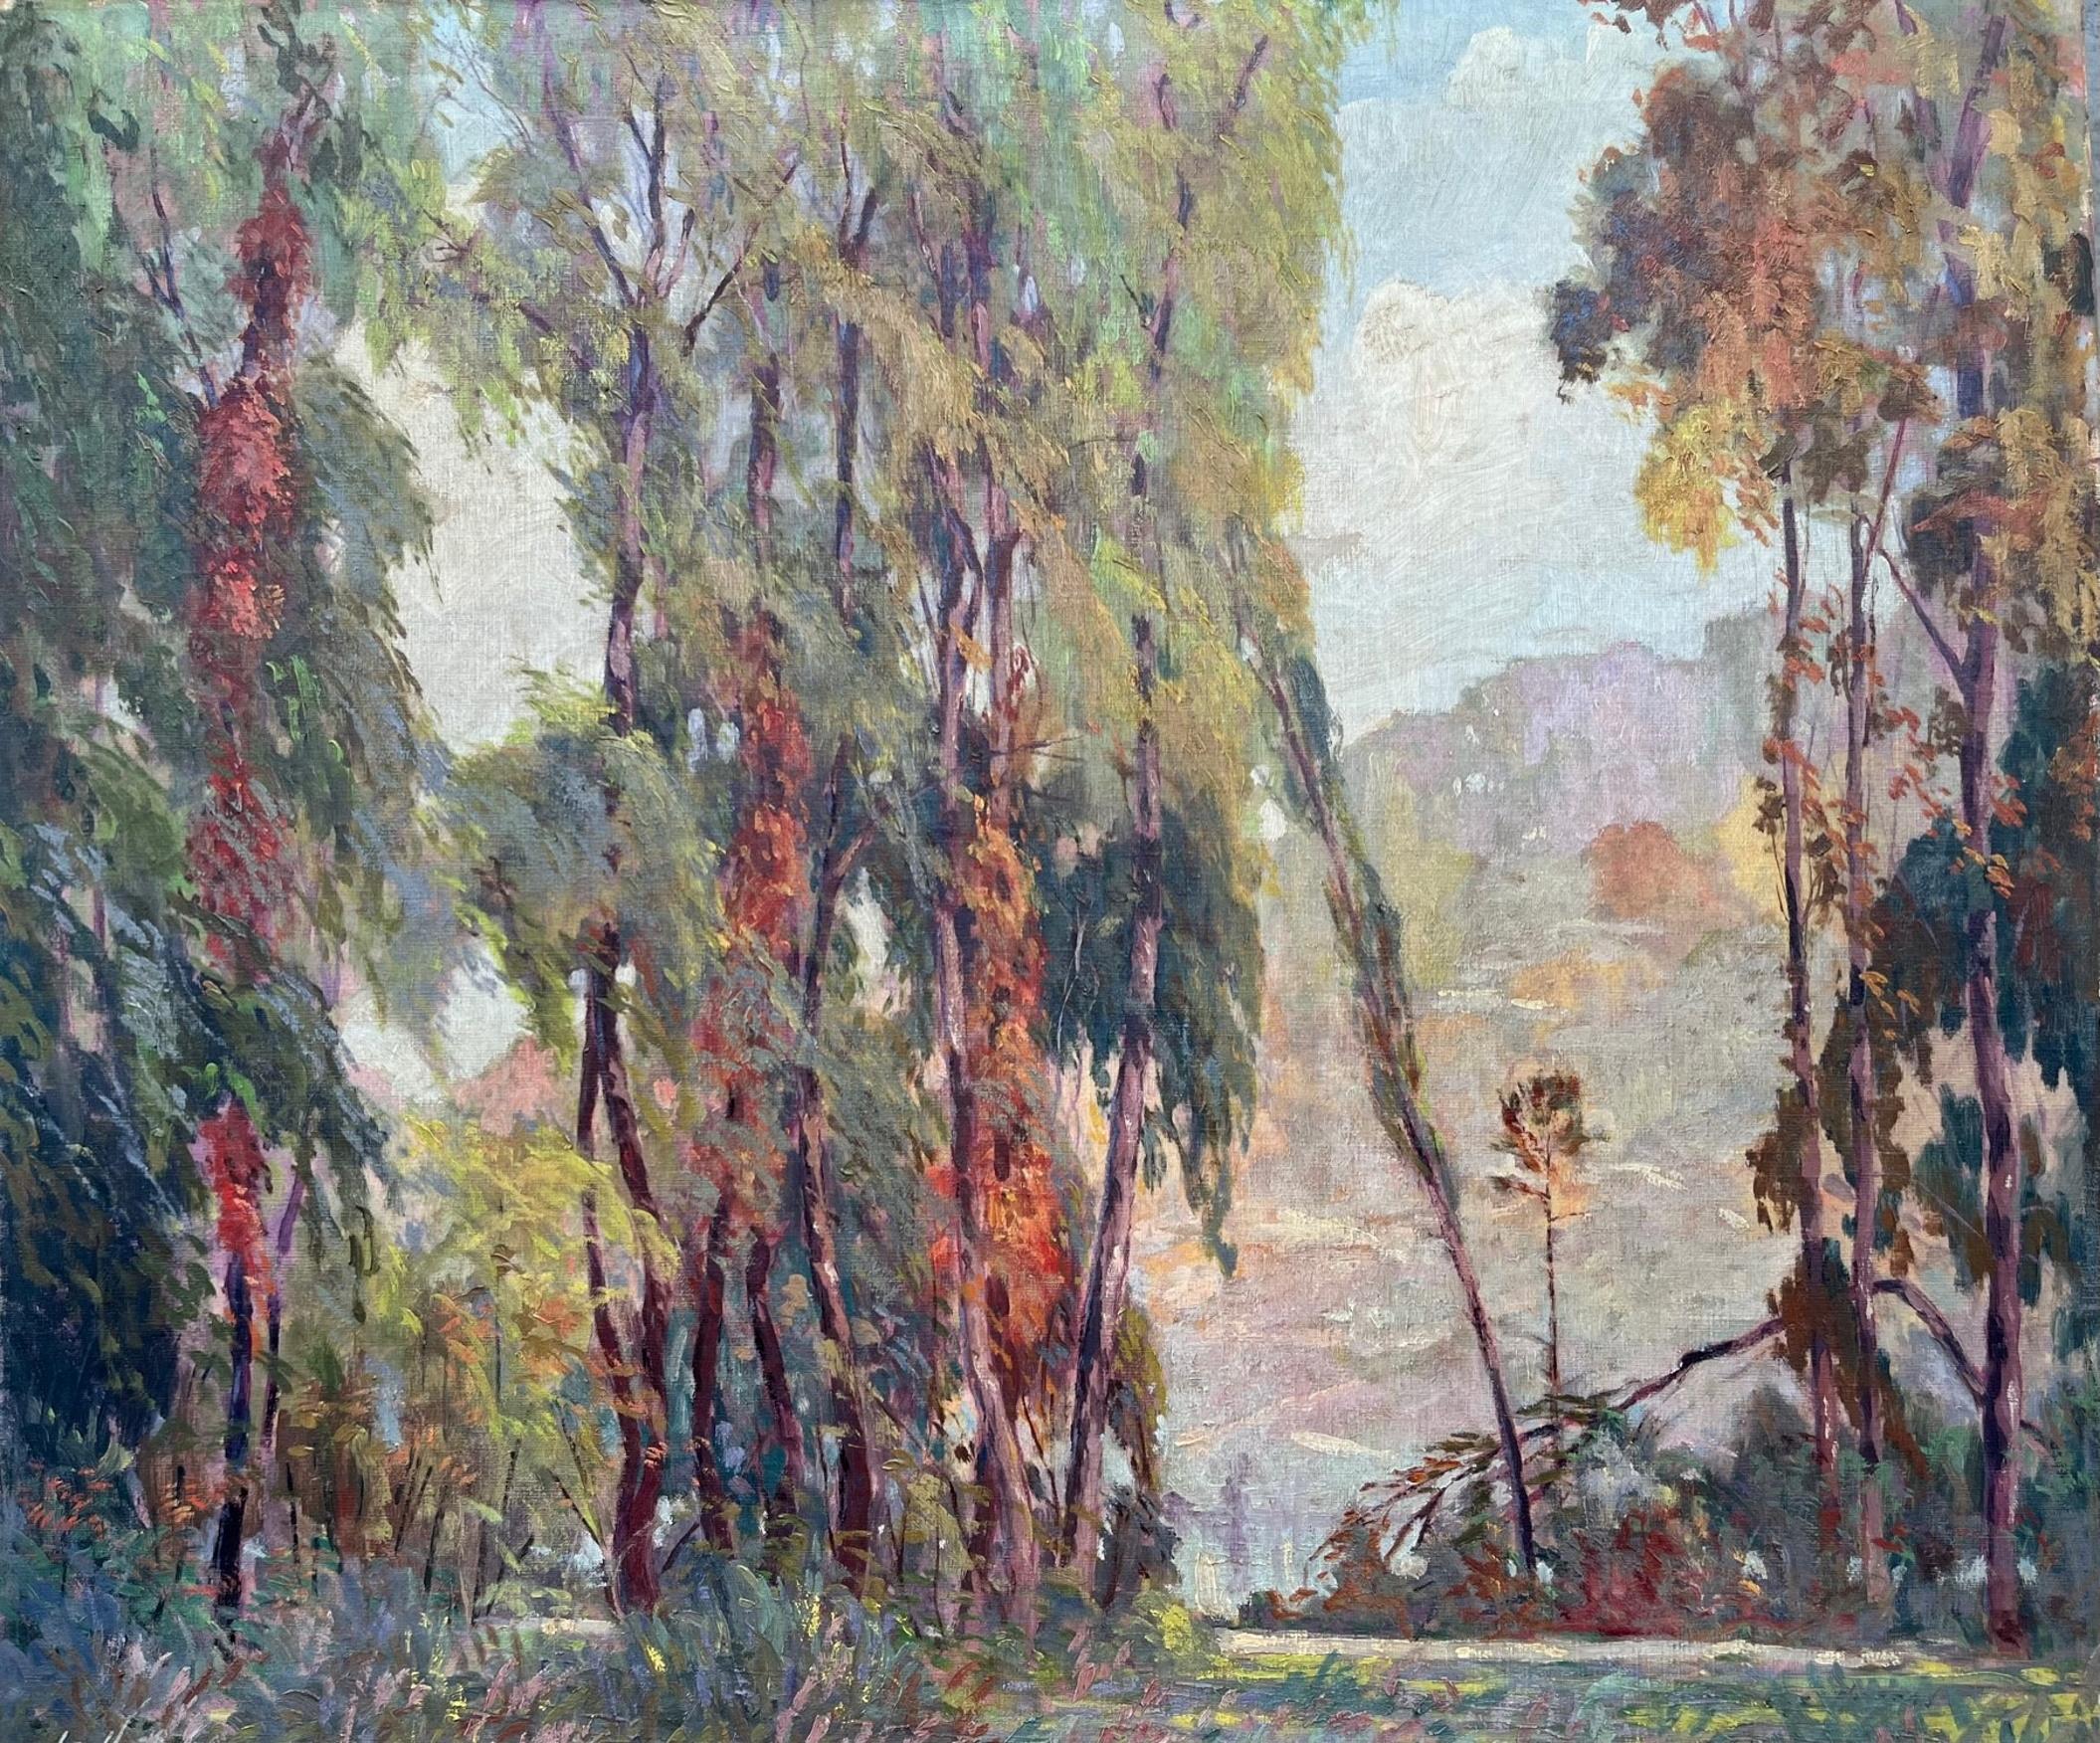 Kunsthandwerklich-impressionistische Landschaftsmalerei, Chicagoer Künstler, 1926

Dieses Gemälde ist ein perfektes Beispiel für die Arts & Crafts-Bewegung. Es ist ein ausgereiftes Kunstwerk und zeugt von Können und Fantasie. Das